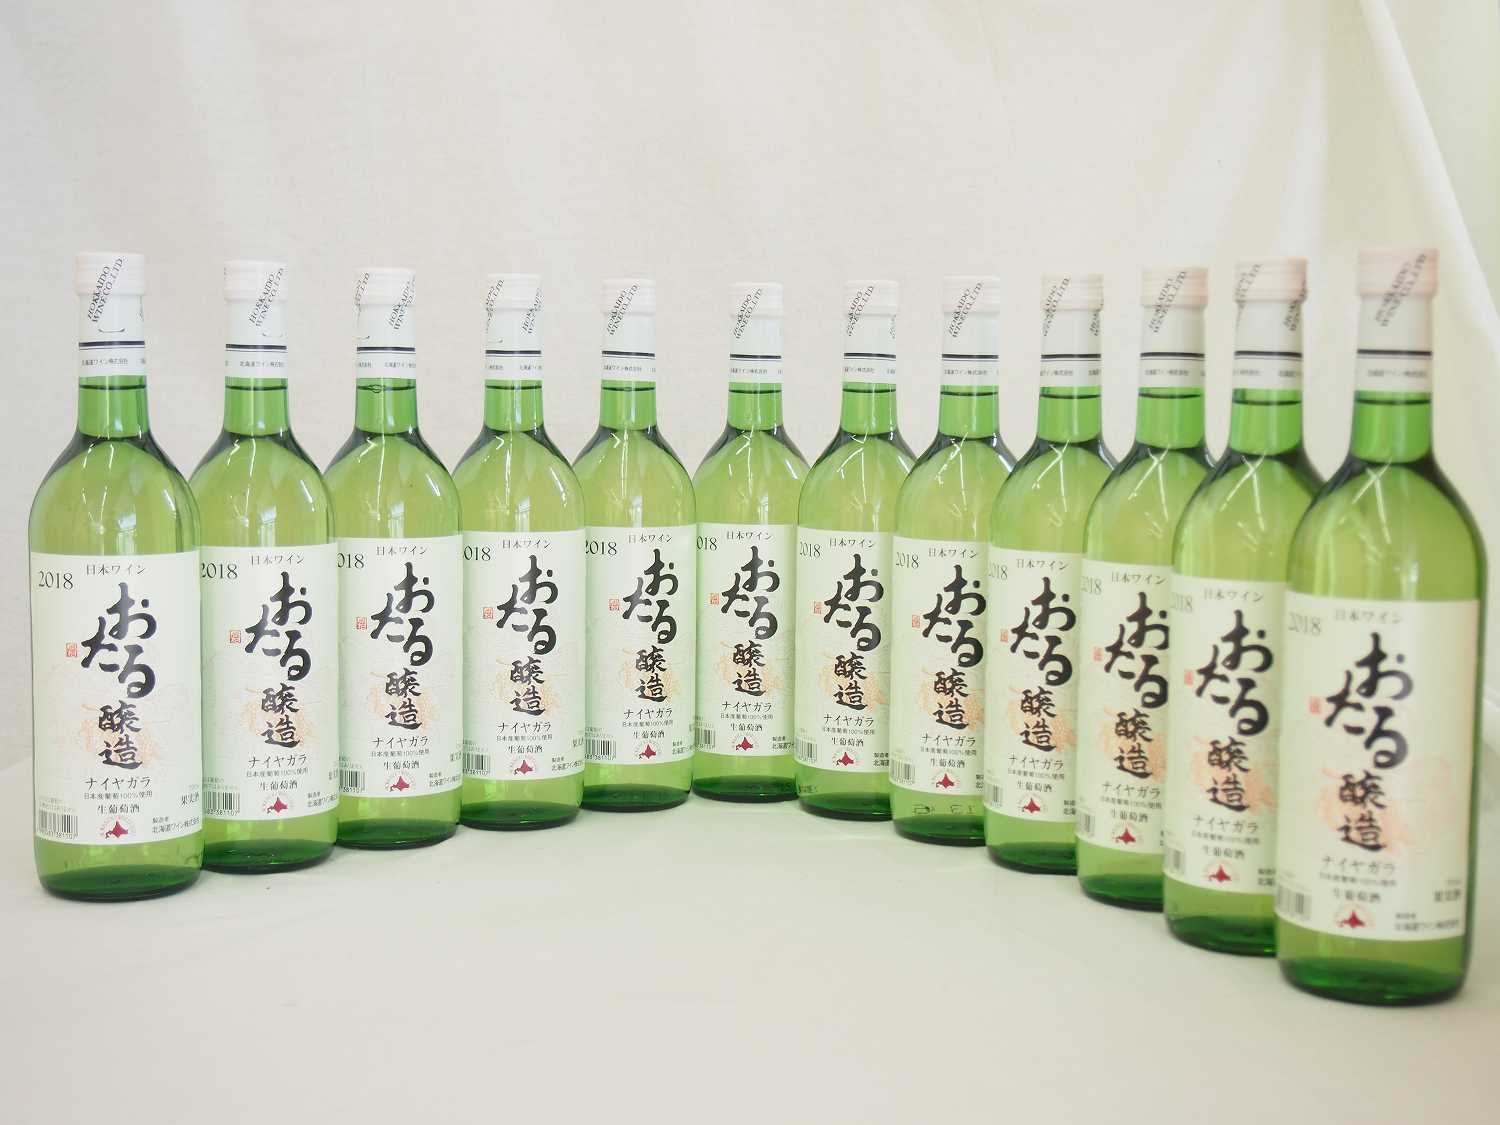 日本ワイン おたる醸造 ナイアガラ 日本産葡萄100% 白 やや甘口 (北海道)720ml×12本